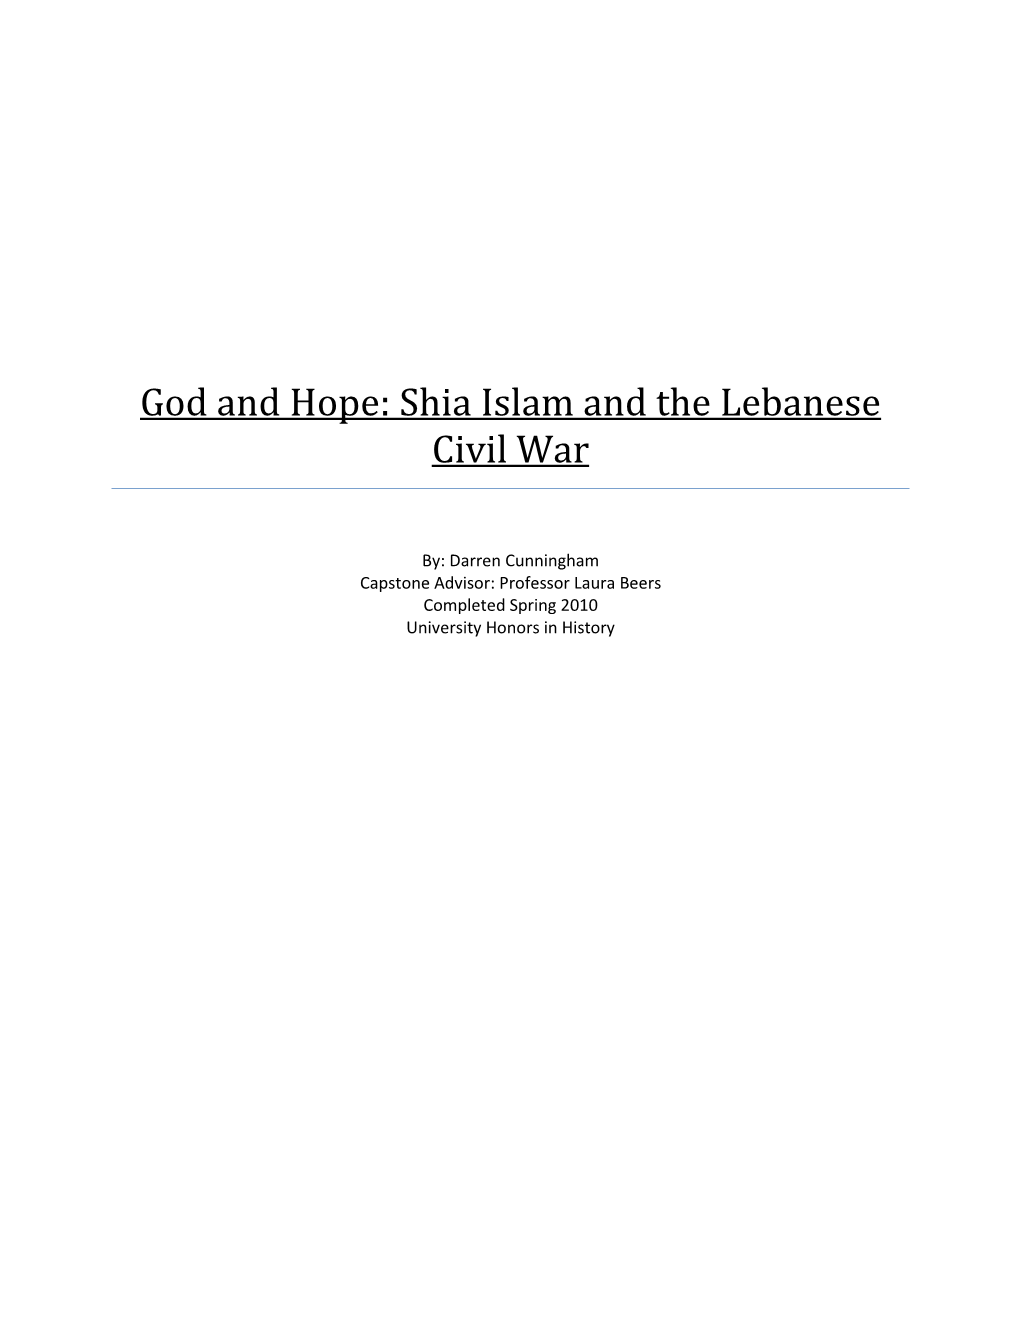 God and Hope: Shia Islam and the Lebanese Civil War